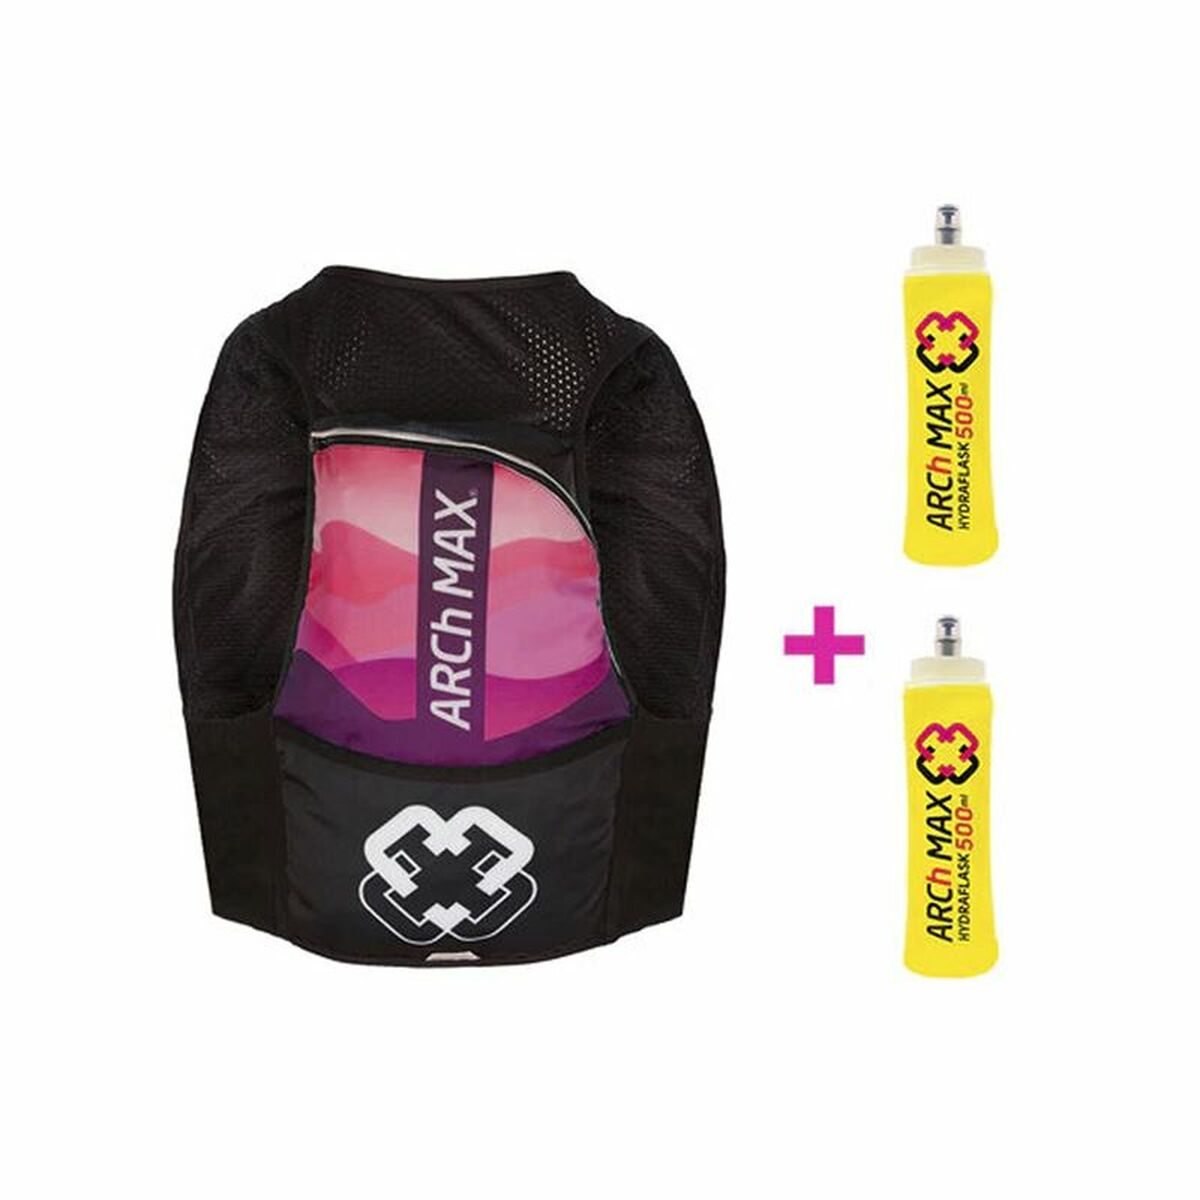 Osta tuote Liivi Hydration Vest ARCh MAX 12L Musta verkkokaupastamme Korhone: Urheilu & Vapaa-aika 20% alennuksella koodilla VIIKONLOPPU